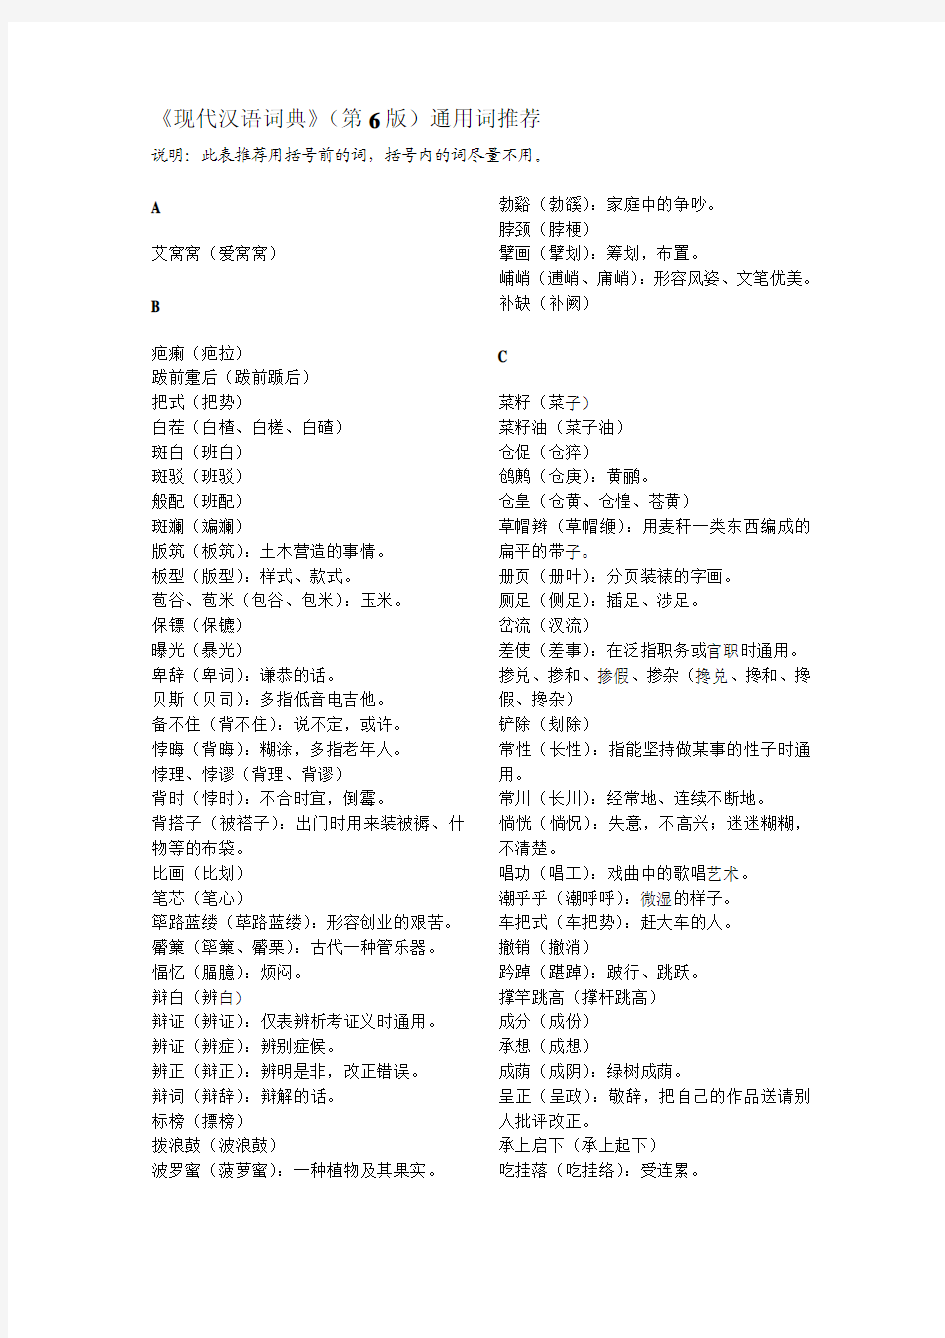 《现代汉语词典》(第6版)通用词推荐